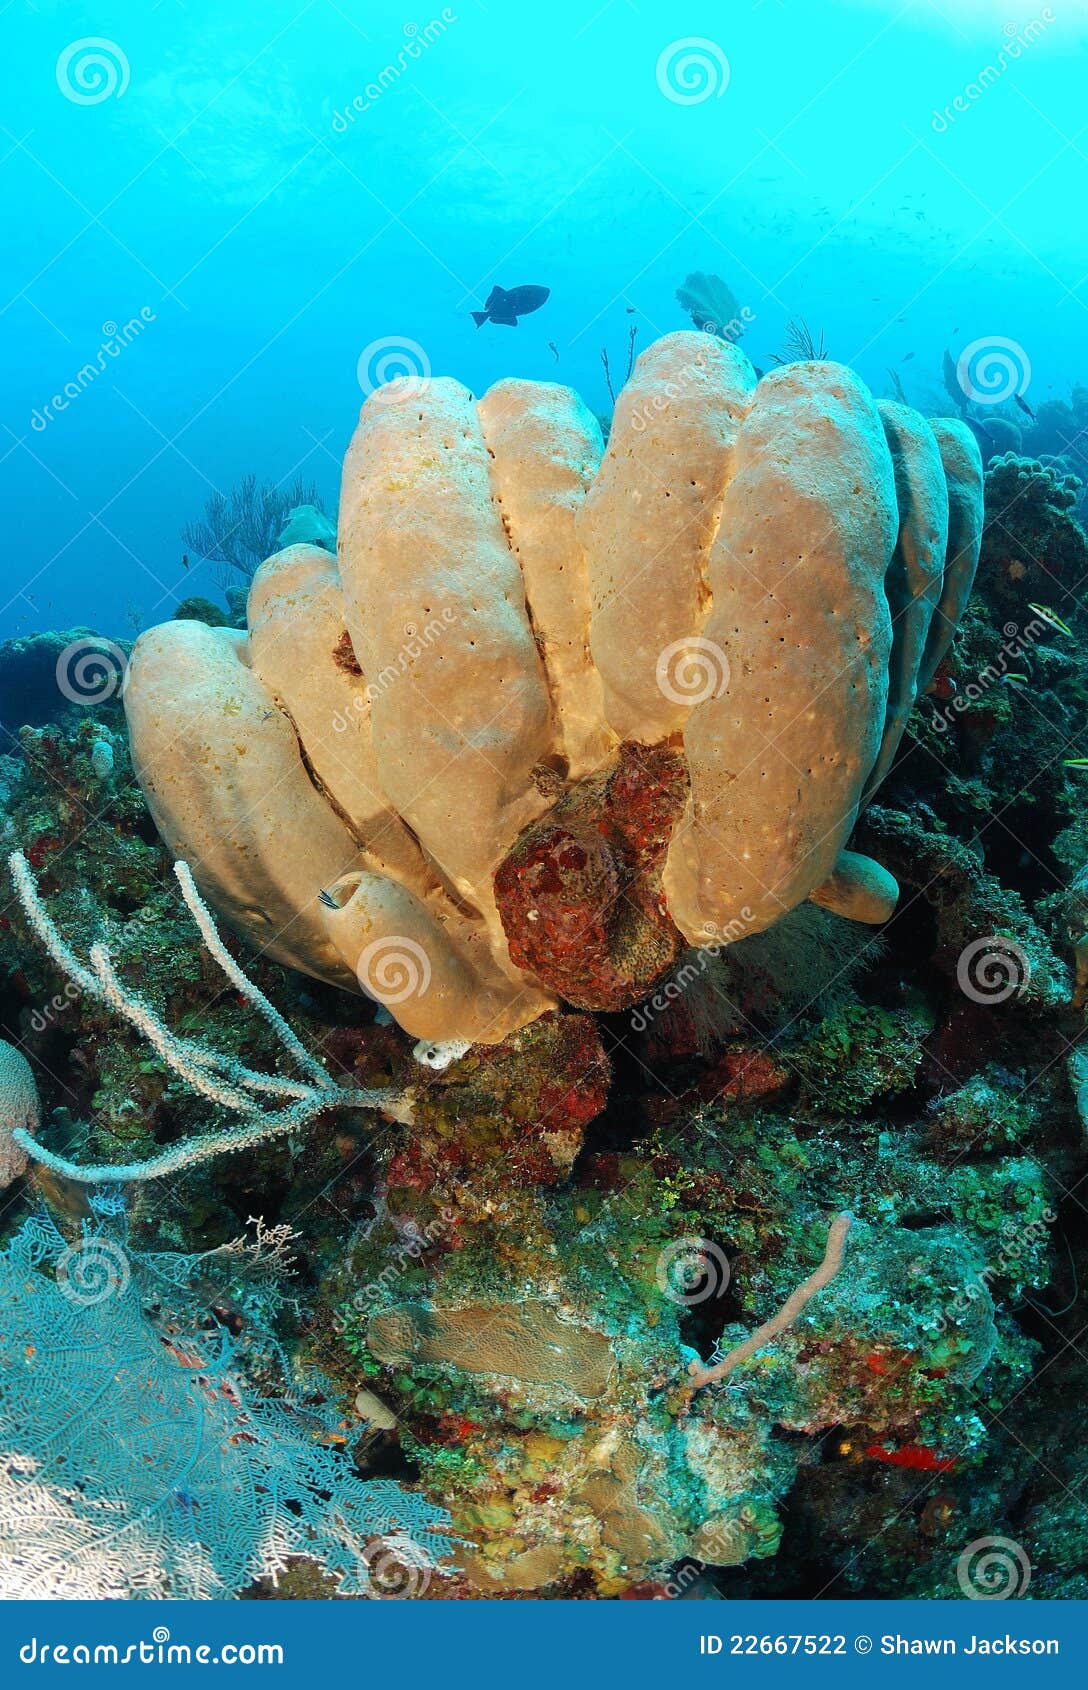 tube sponges on coral reef